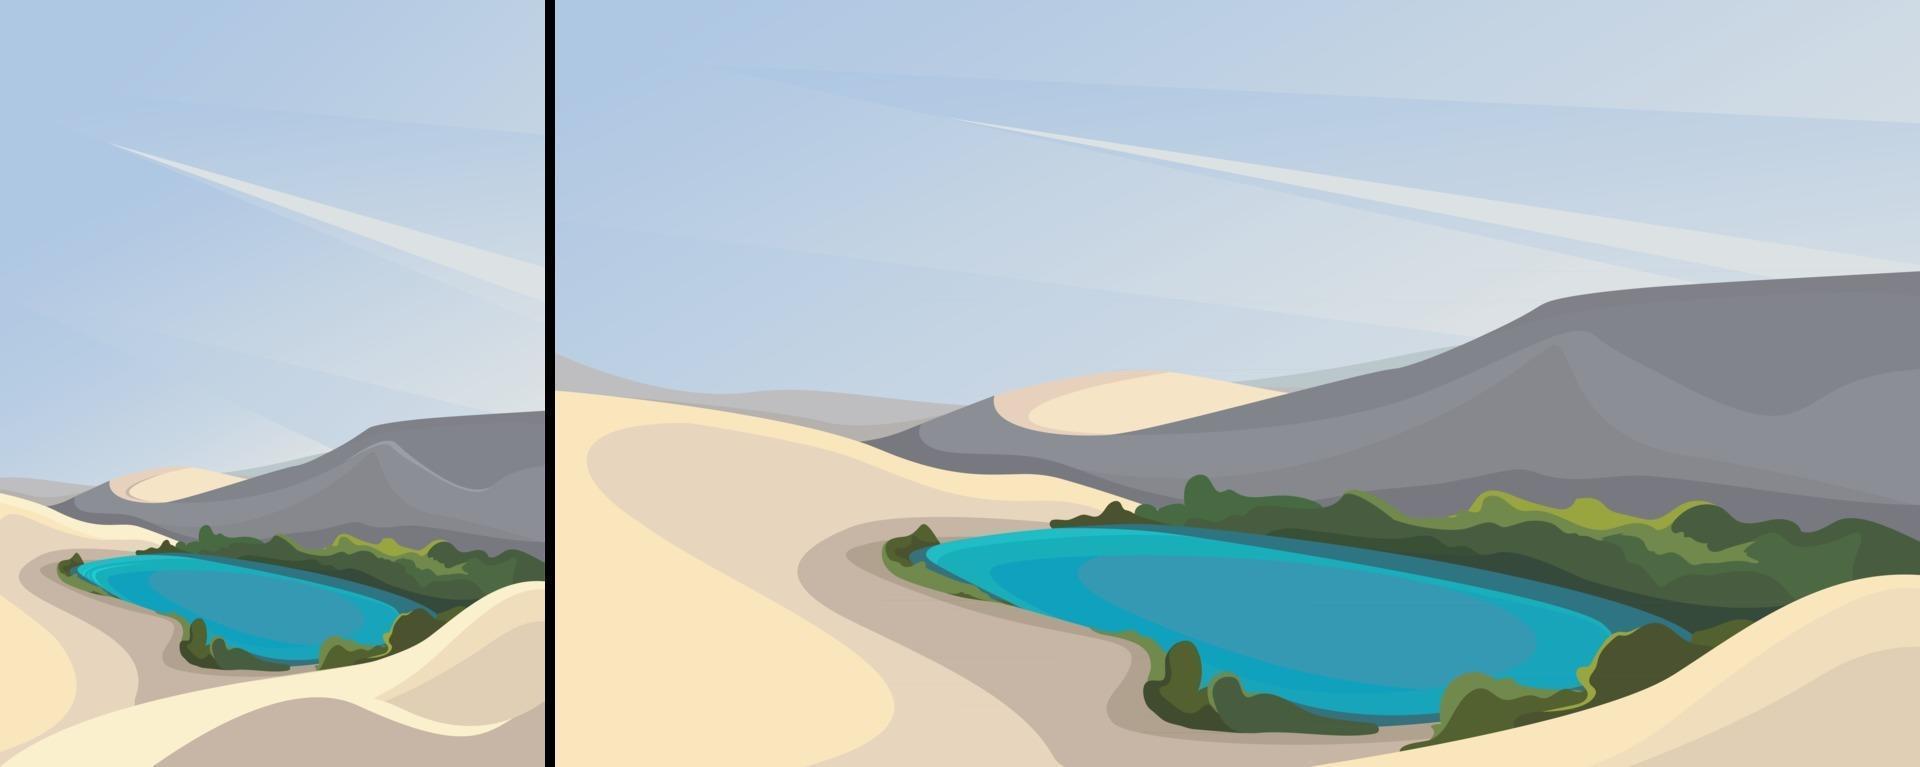 landskap med öken och liten sjö i vertikal och horisontell orientering vektor